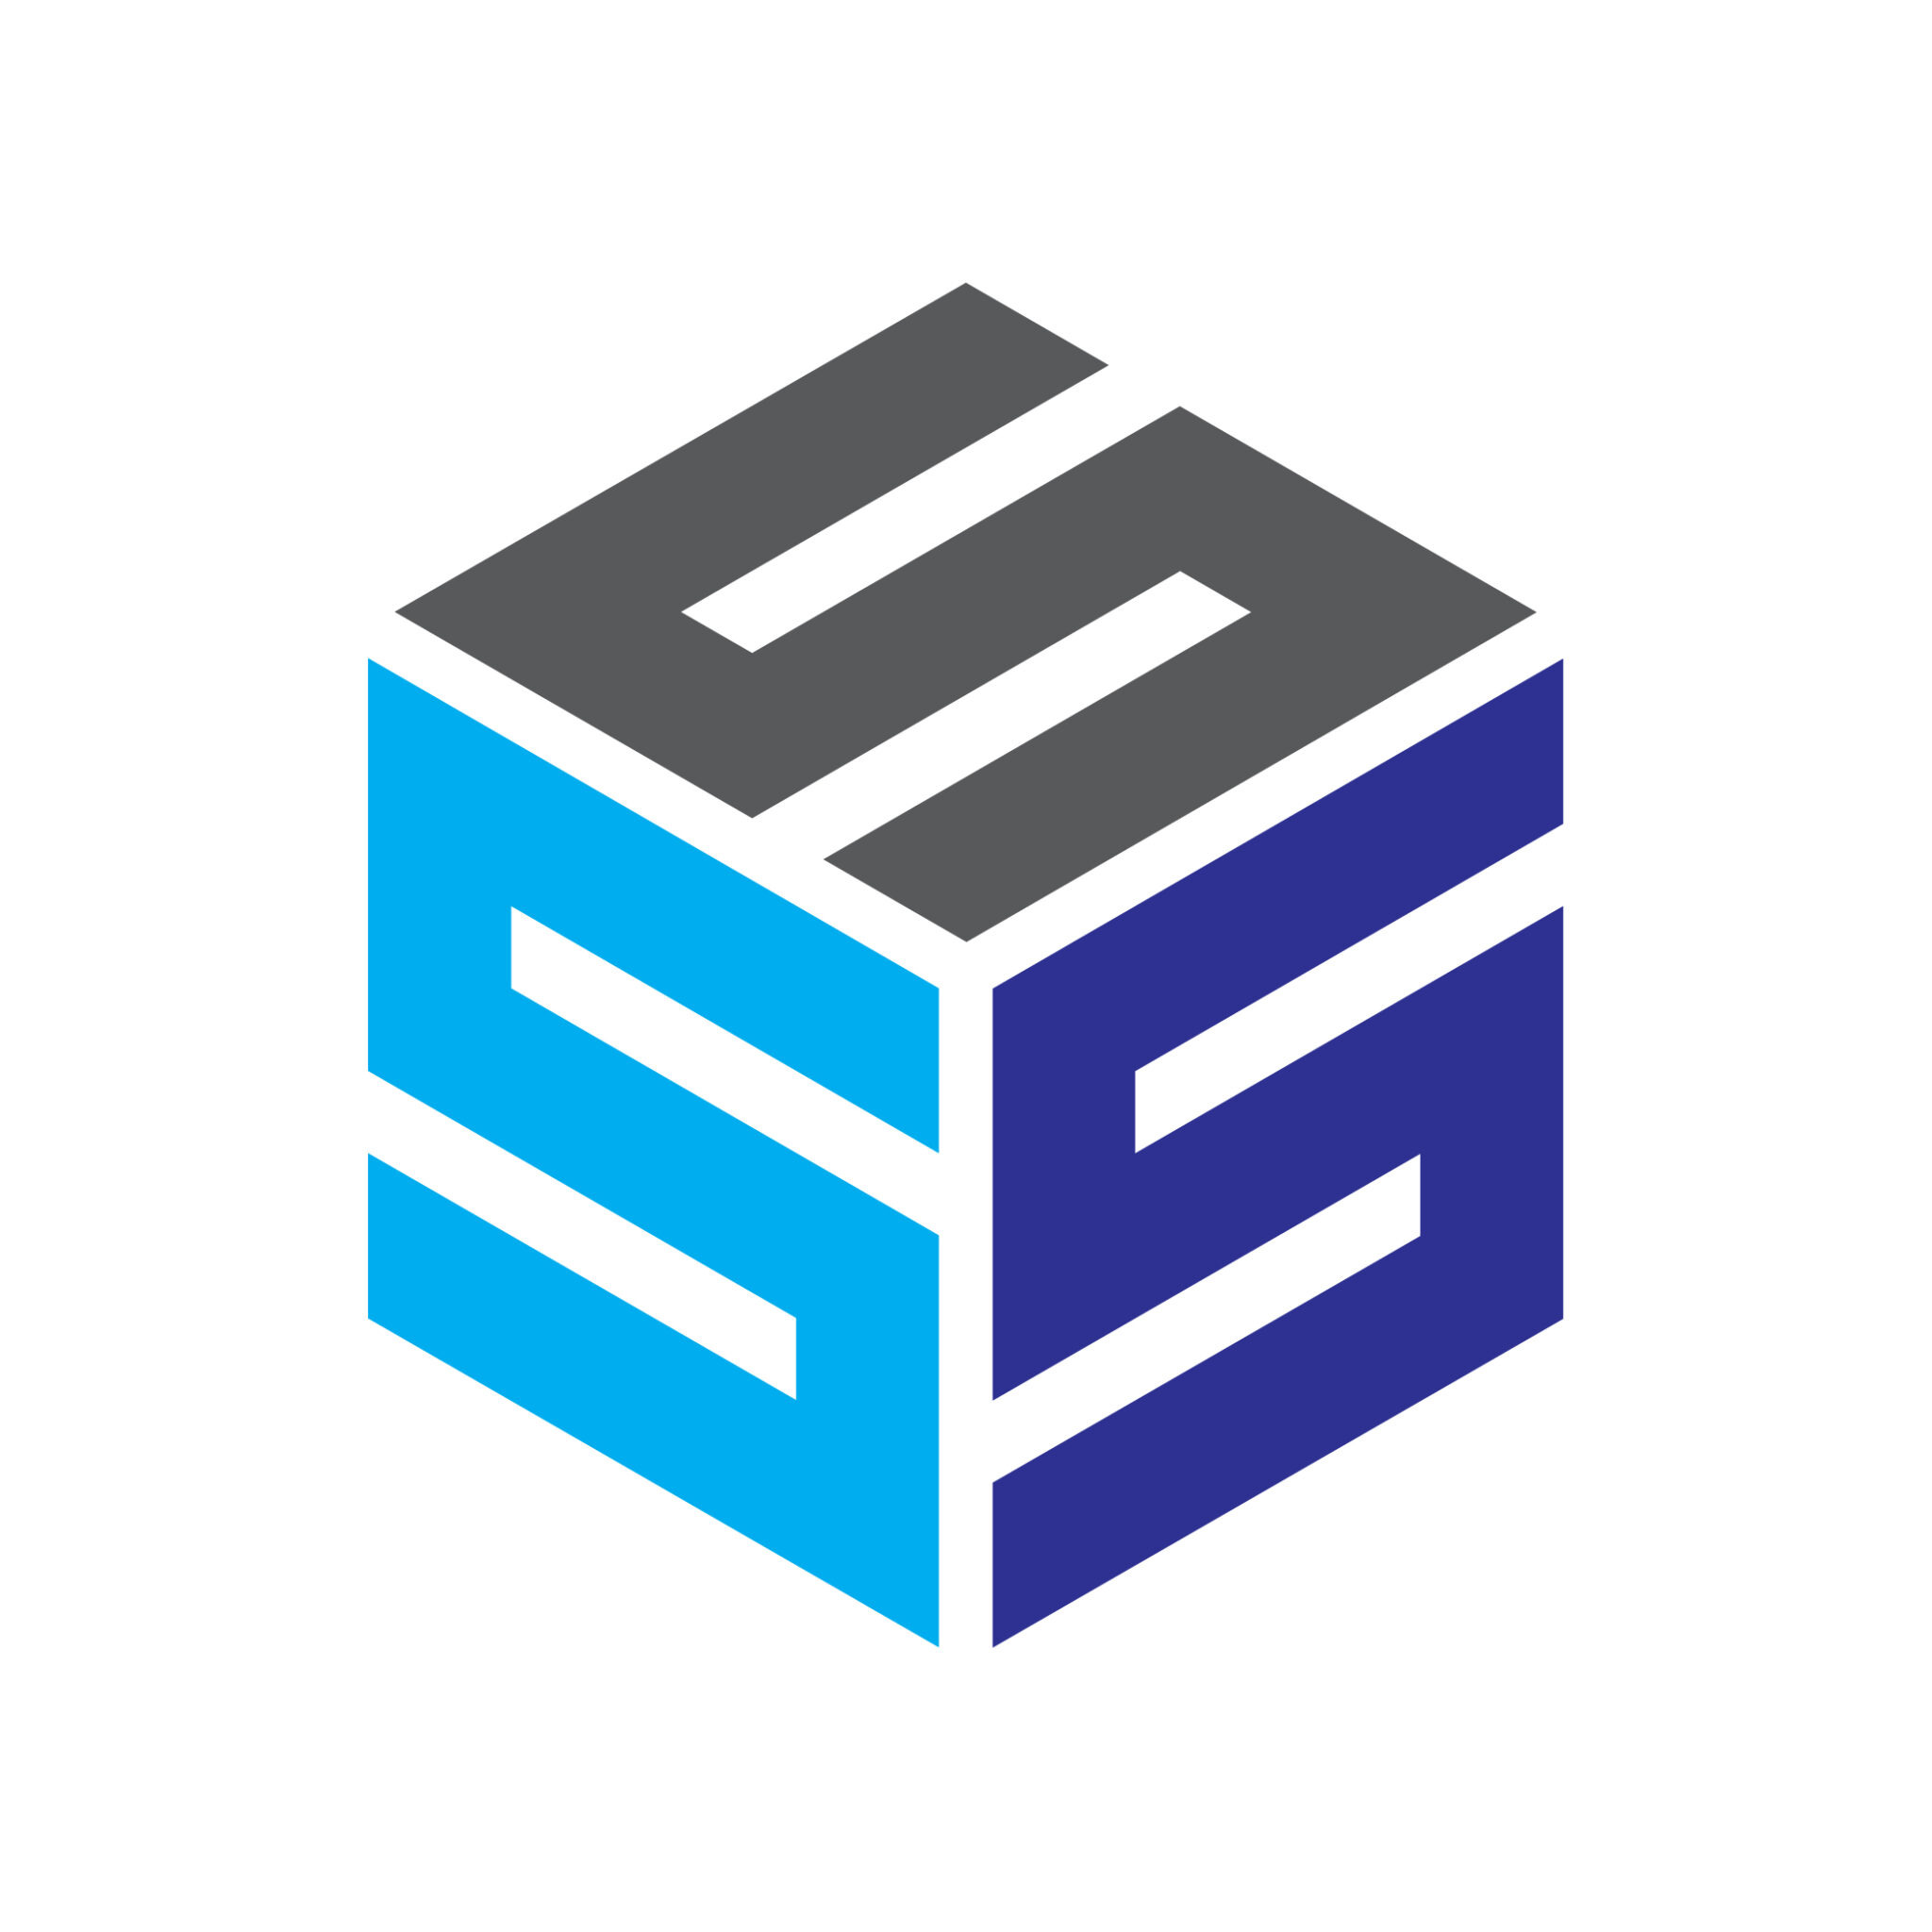 Letter SSS Logo Design Vector Image Template - MasterBundles